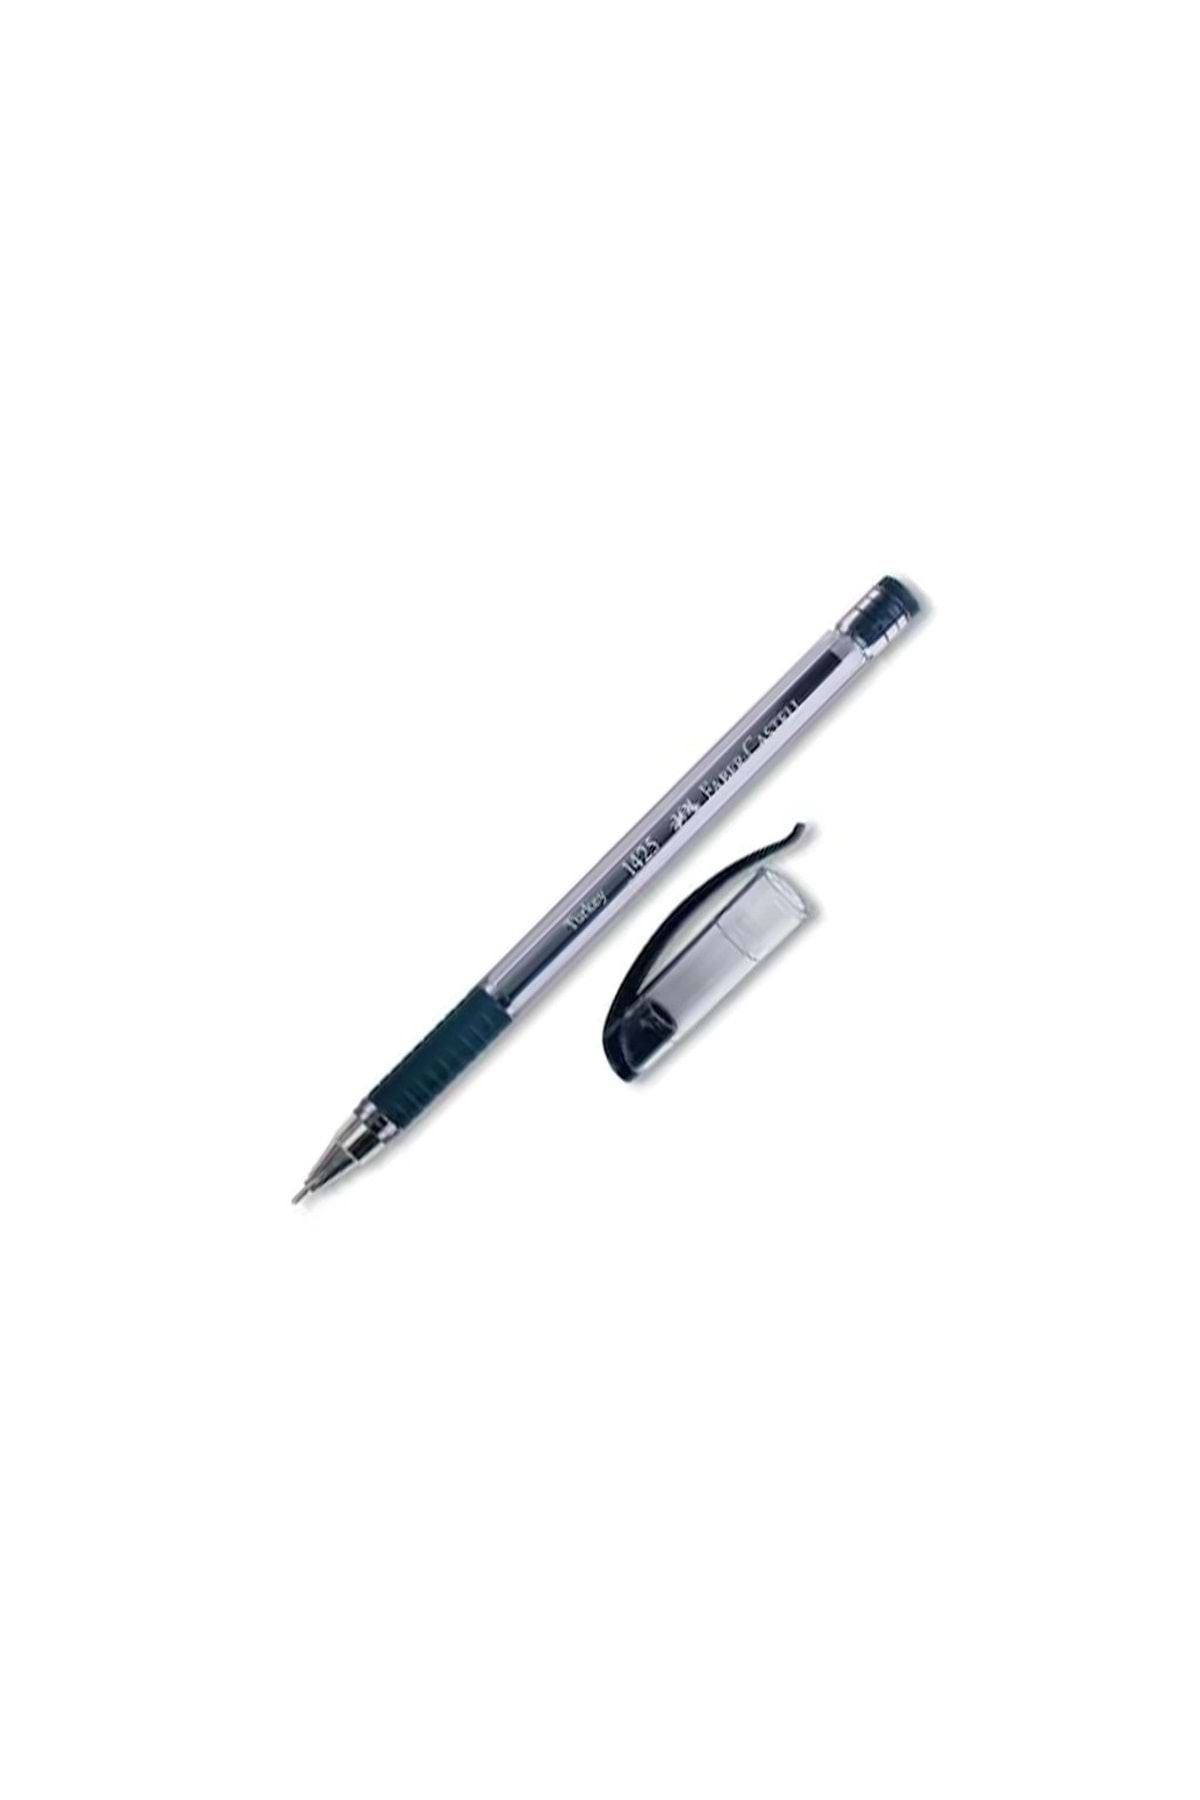 Faber Castell Tükenmez Kalem Iğne Uç (0.7mm Siyah)